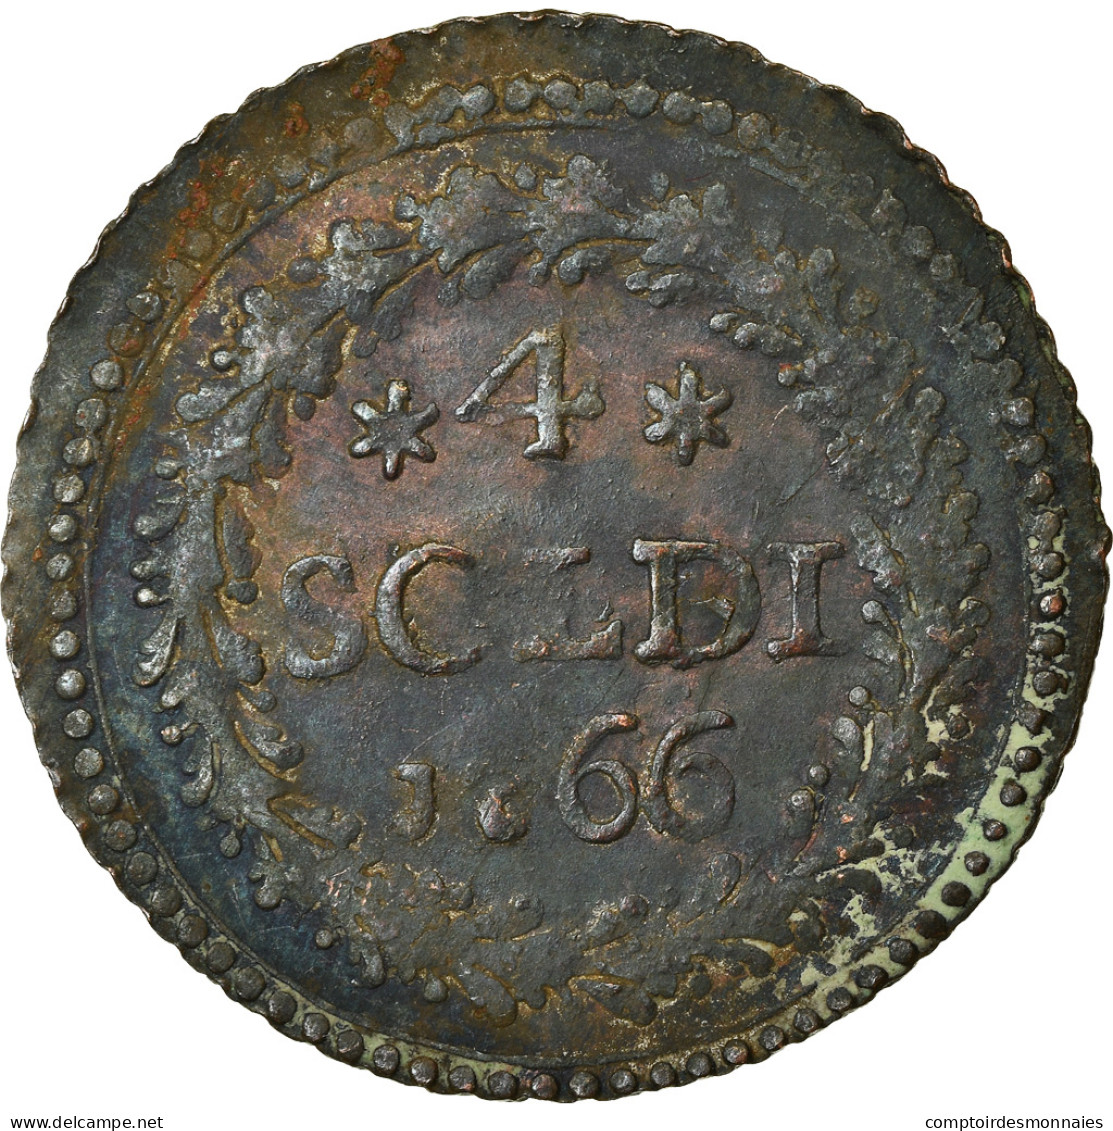 Monnaie, États Italiens, CORSICA, General Pasquale Paoli, 4 Soldi, 1766 - Corse (1736-1768)